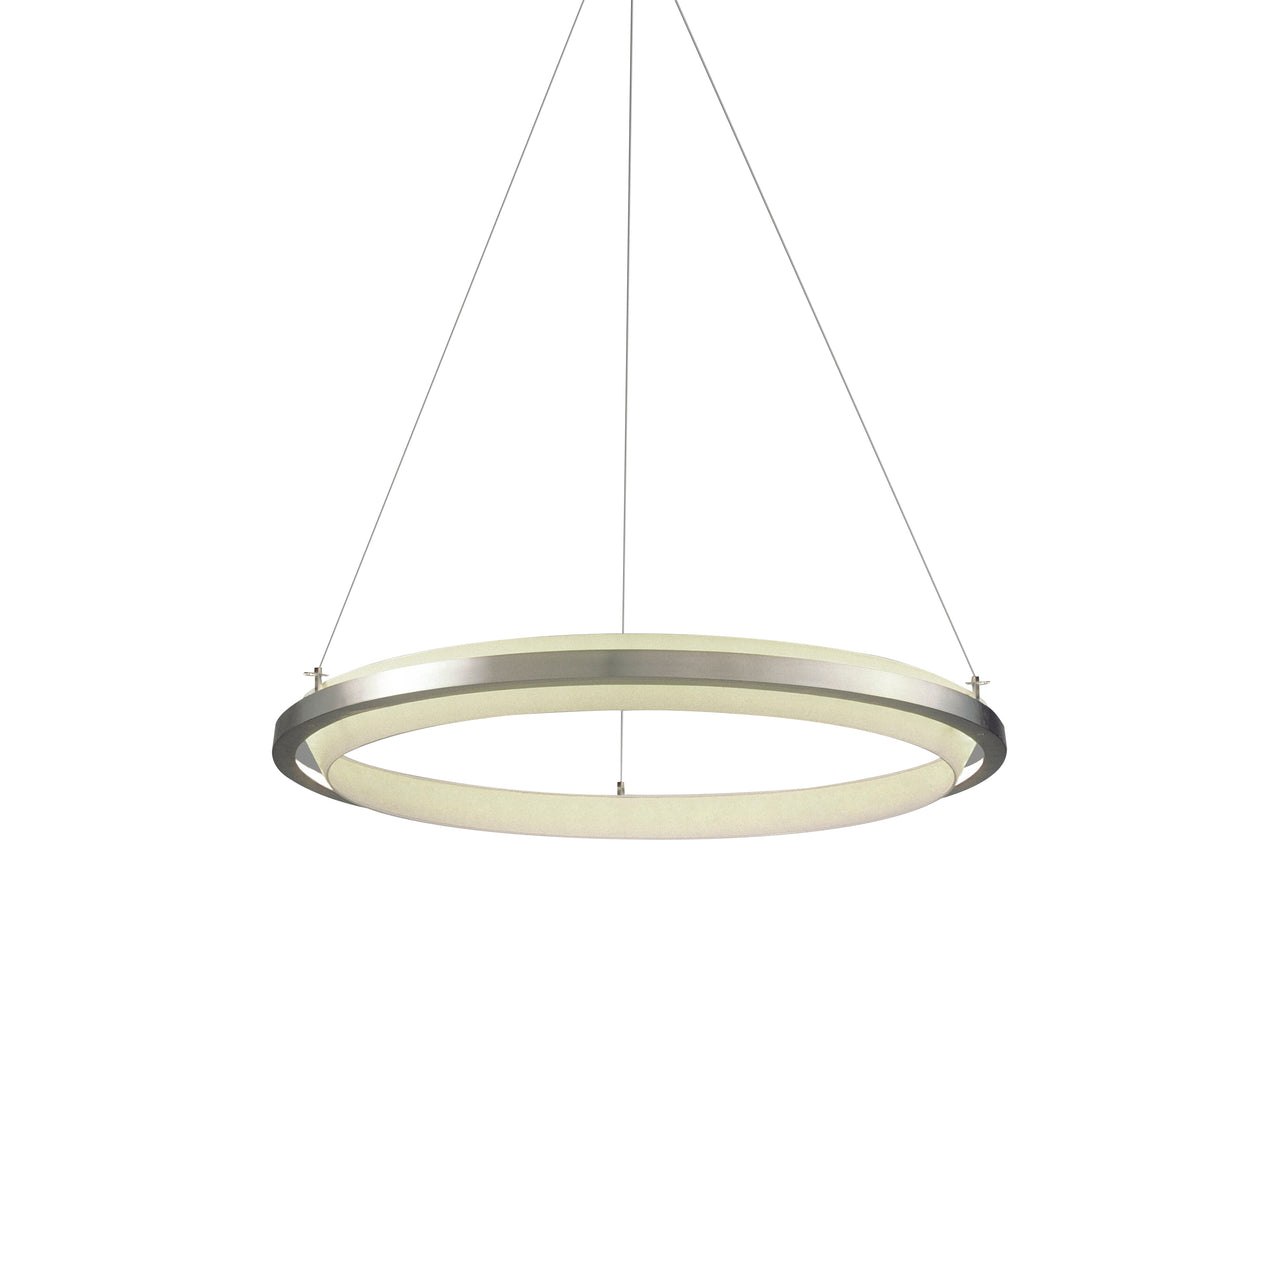 Nimba Pendant Lamp: Small - 23.6